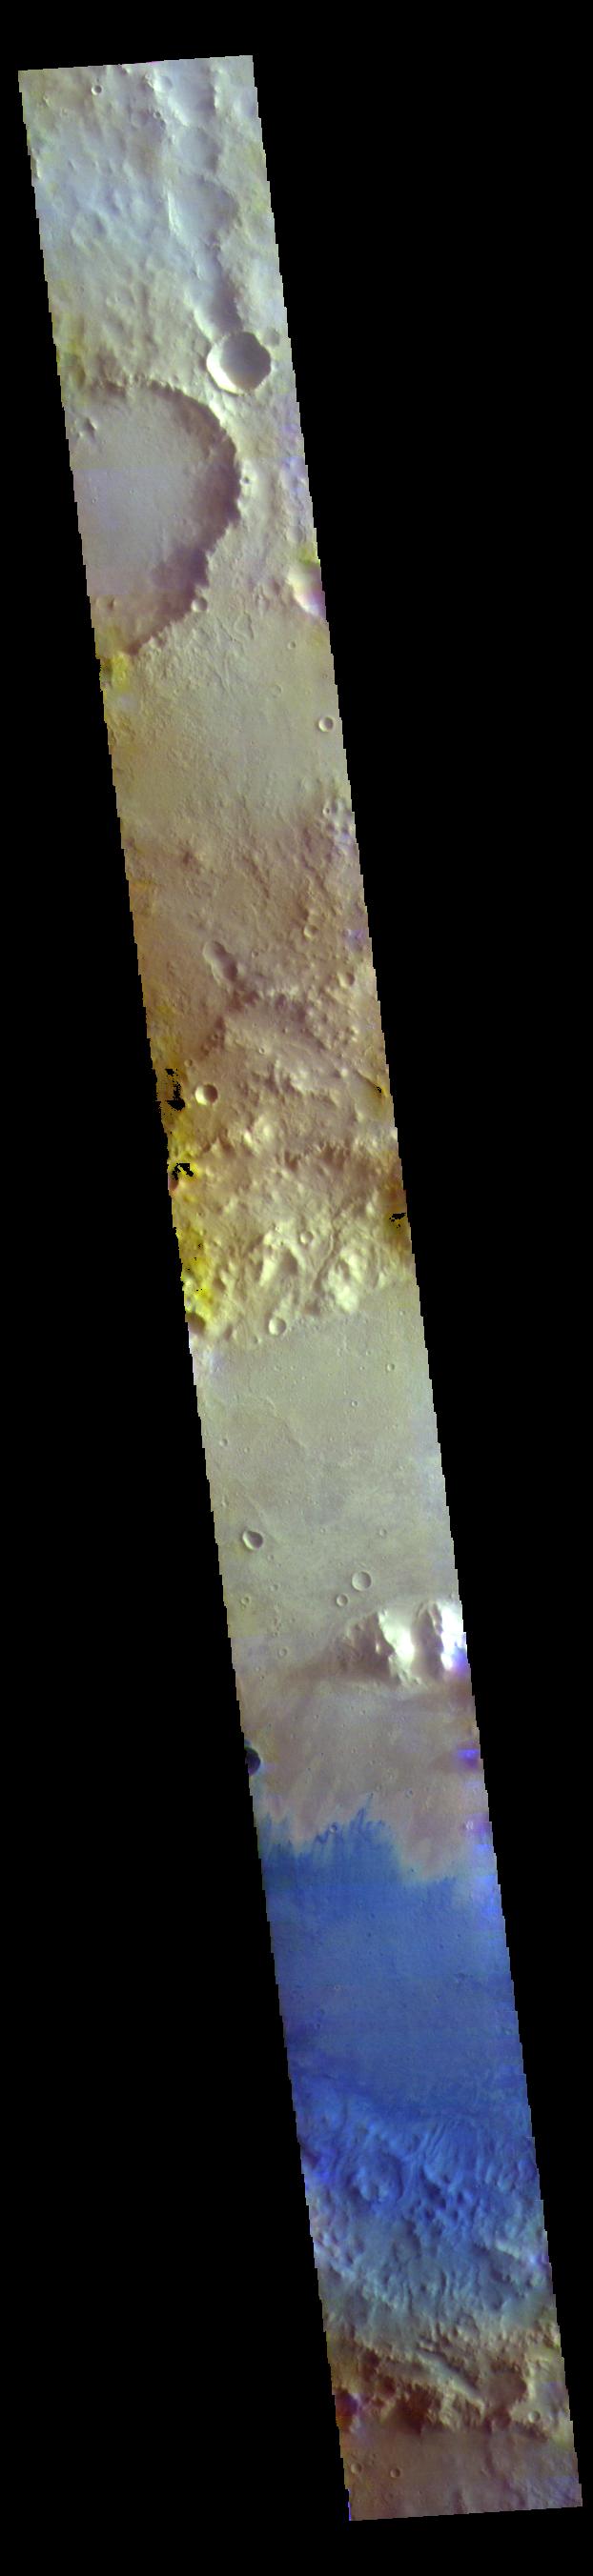 PIA23040: Marth Crater - False Color